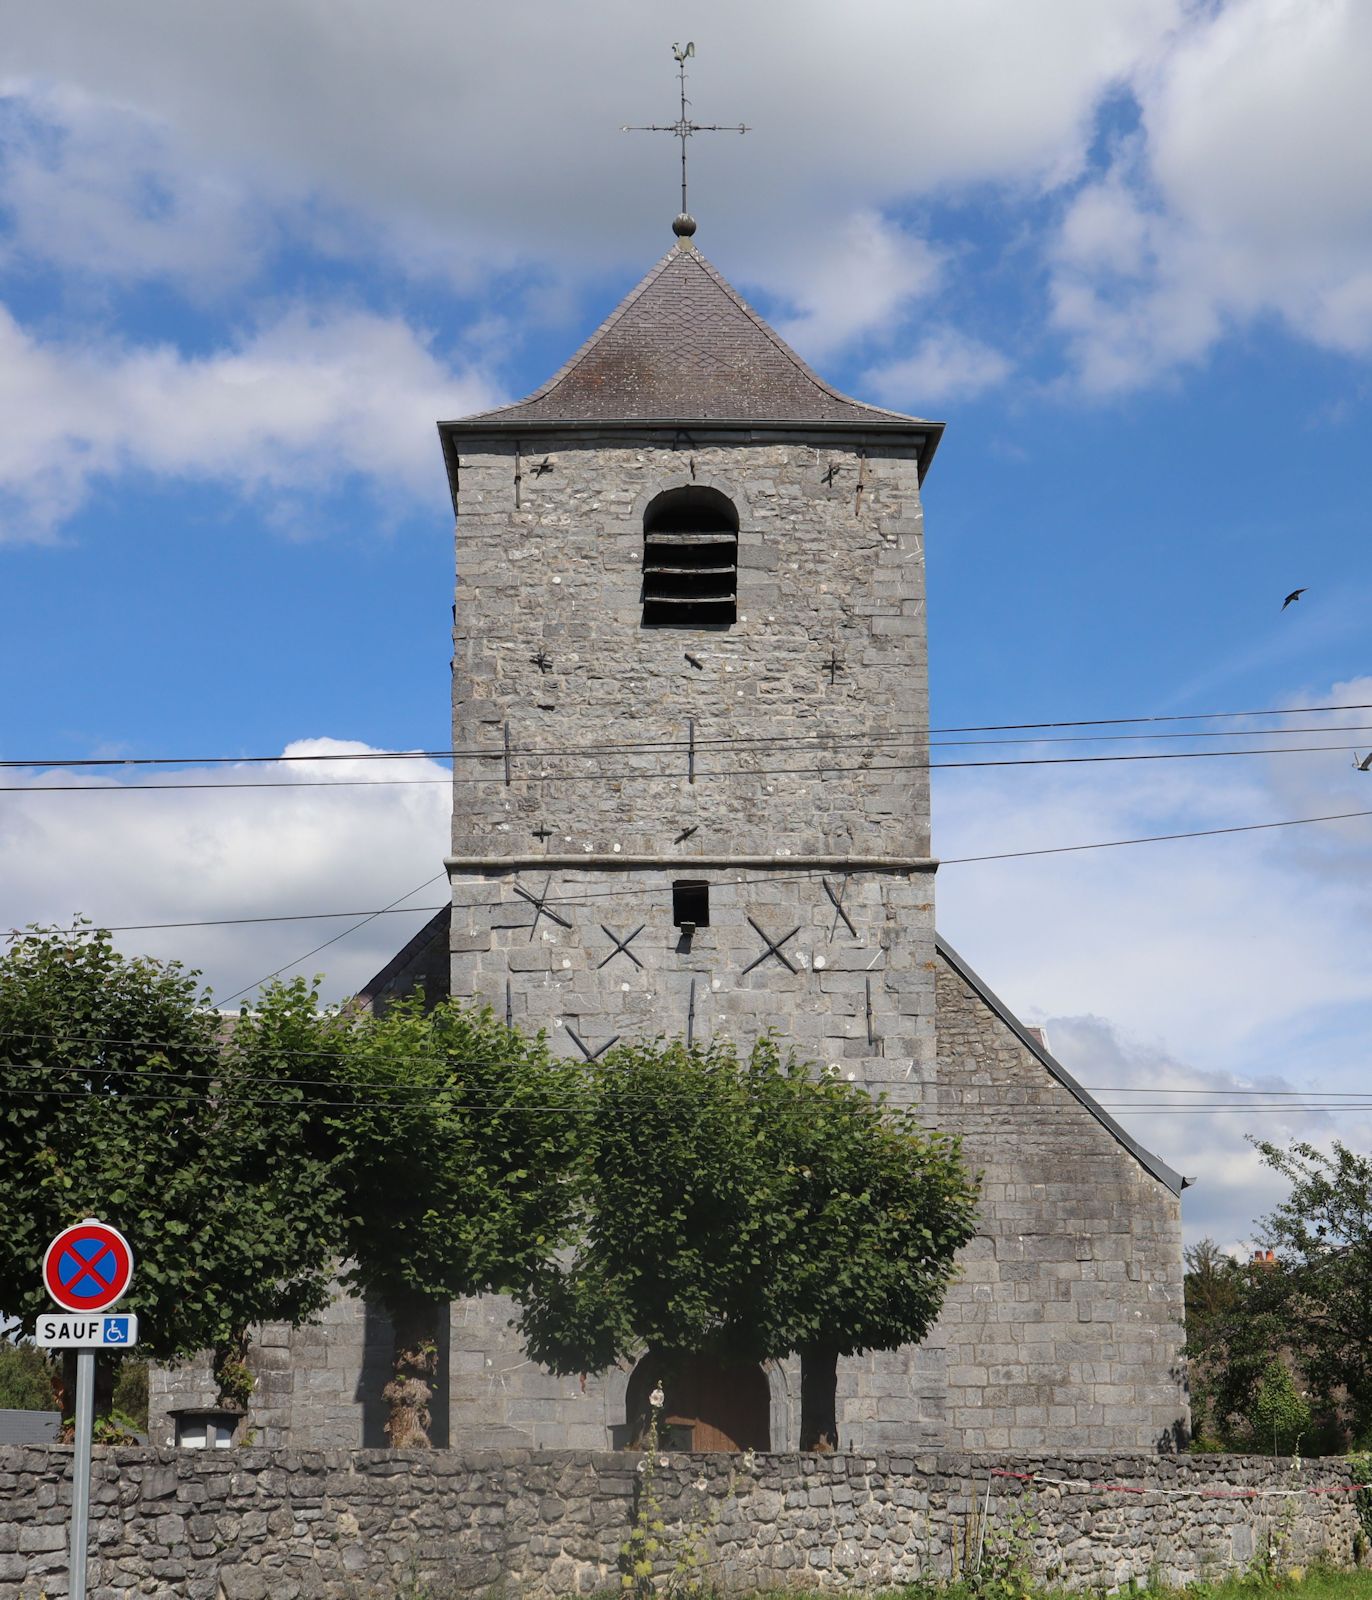 heutige Pfarrkirche St-Hilaire in Wallers-en-Fagne